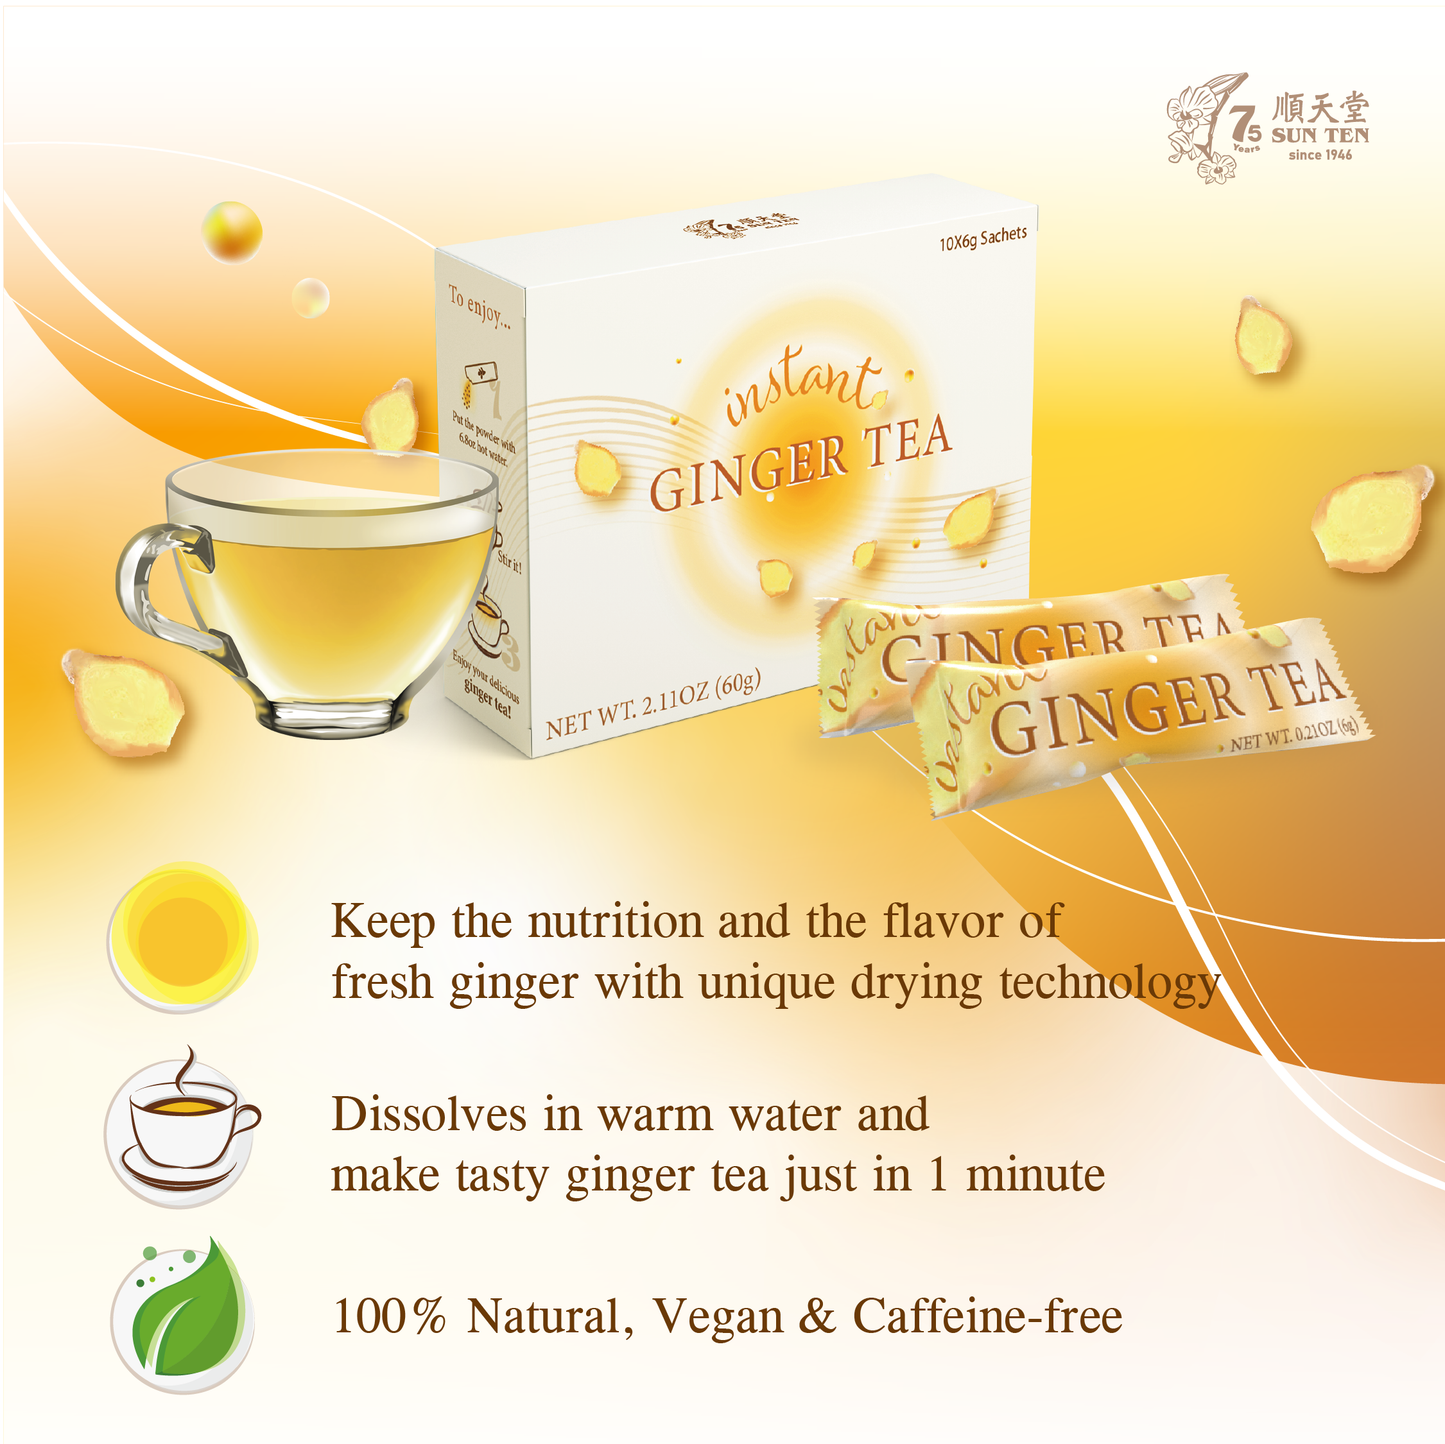 (清冠套組Plus+) 清冠一號 SunTen Glory 10™ x1 + 暖心生薑茶 Instant Ginger Tea x2 + 喉立順草本潤喉糖 x2